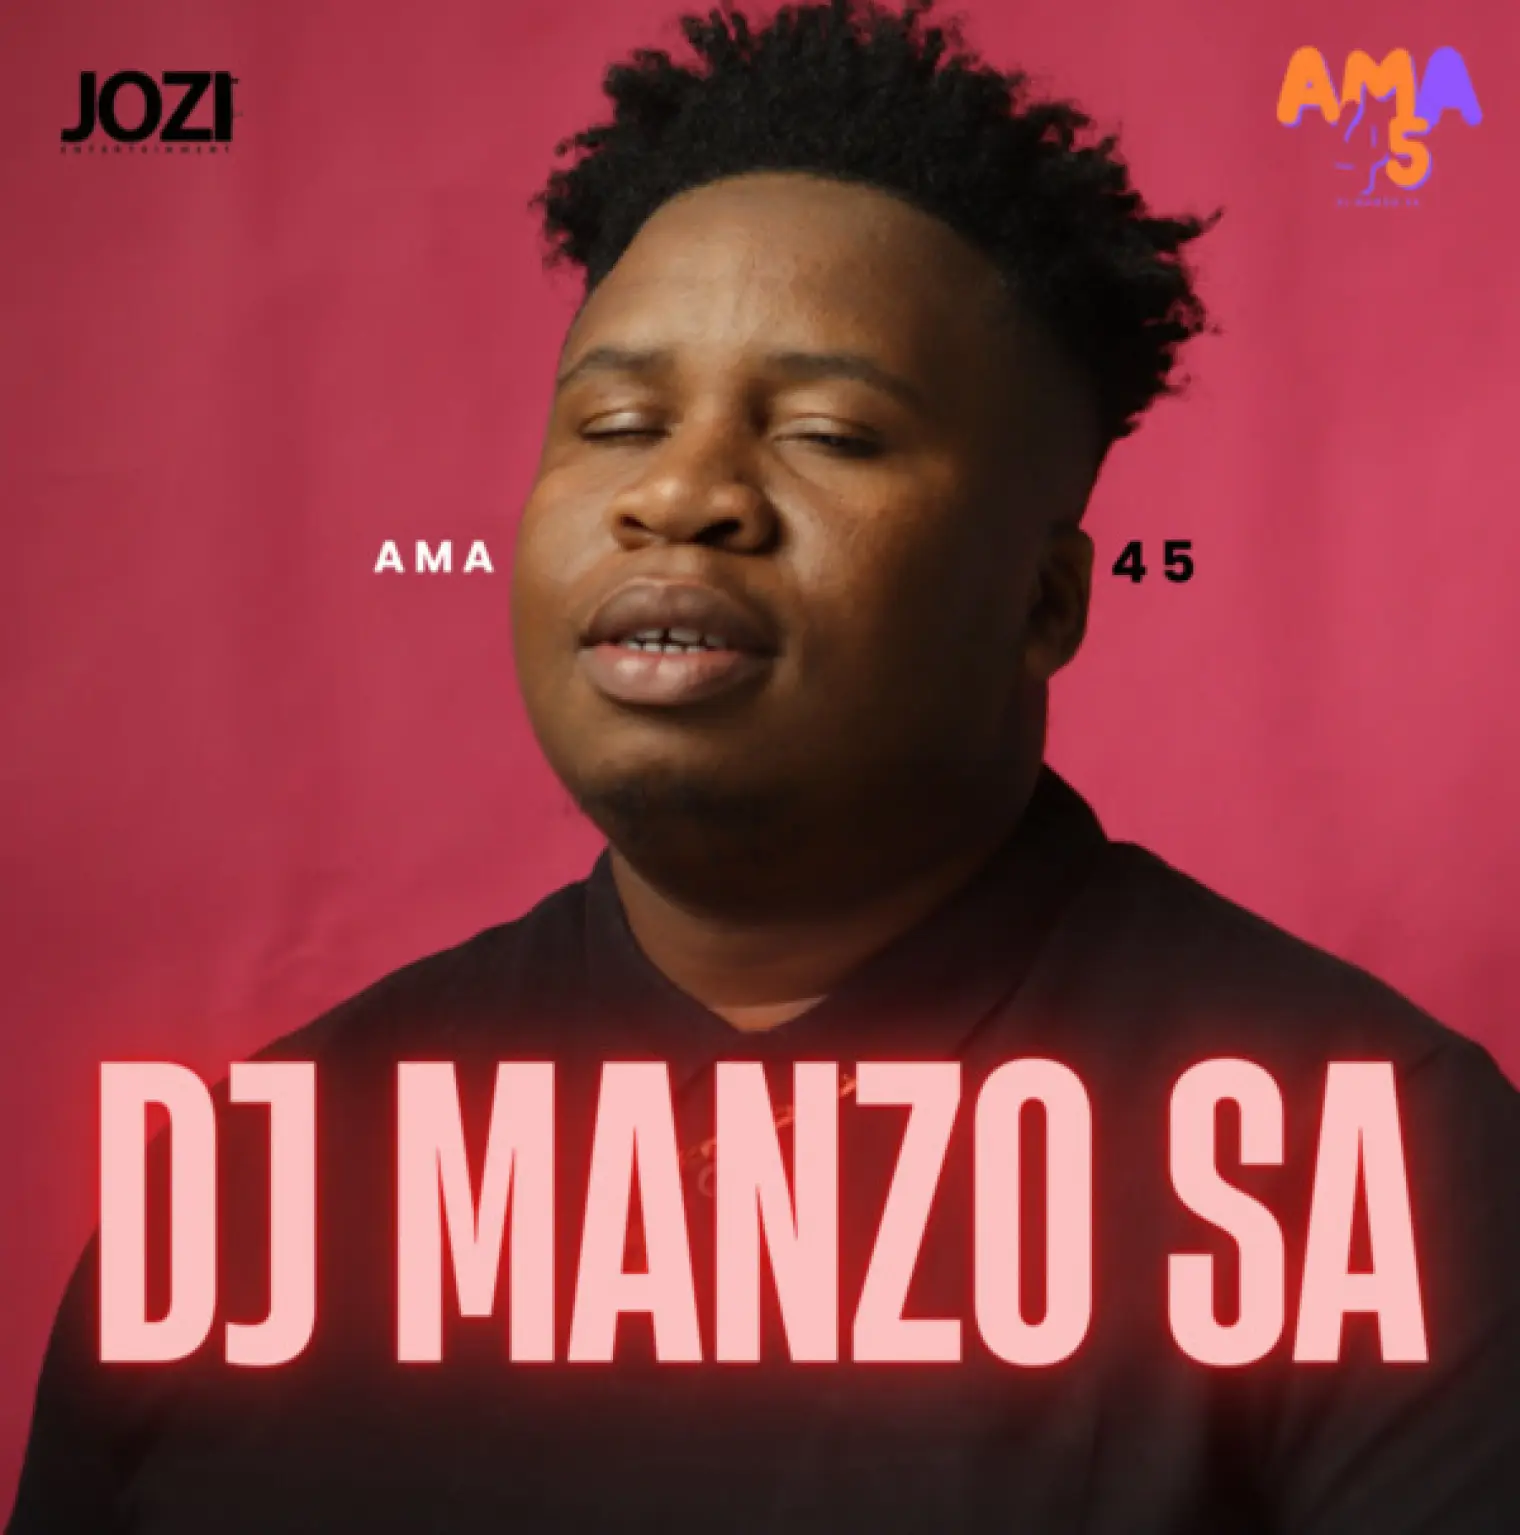 ama45 -  DJ Manzo SA 